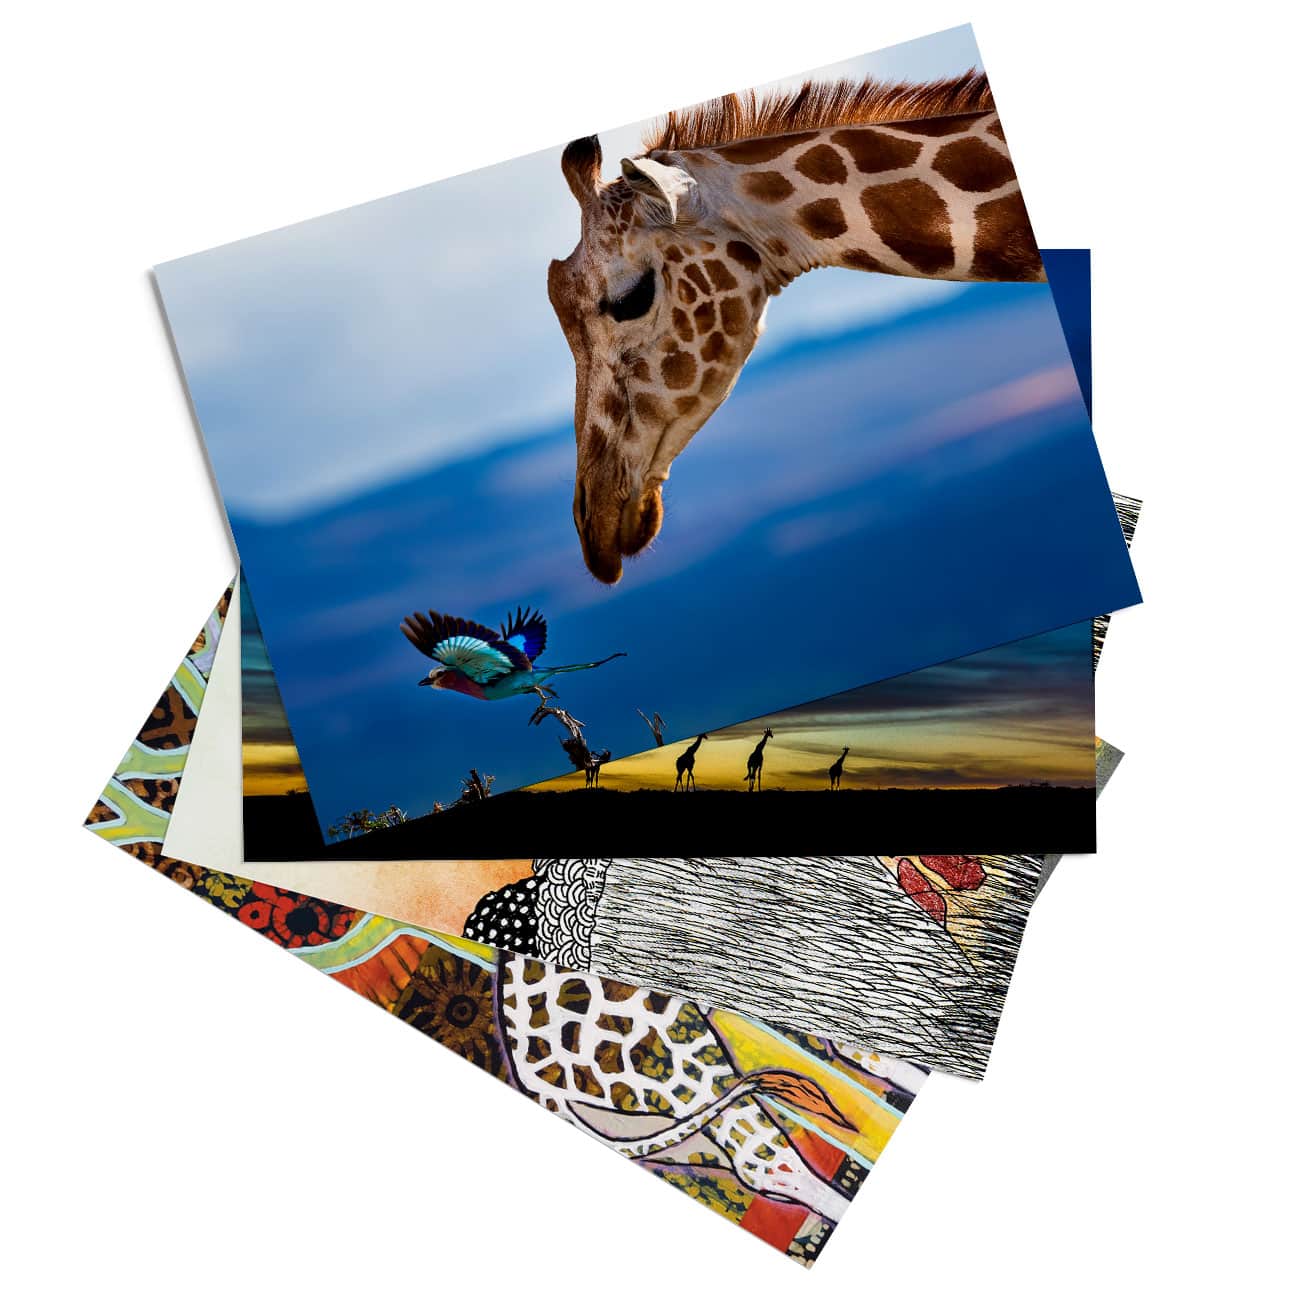 ‘Giraffe of Africa’ assorted postcard set (25 cards)